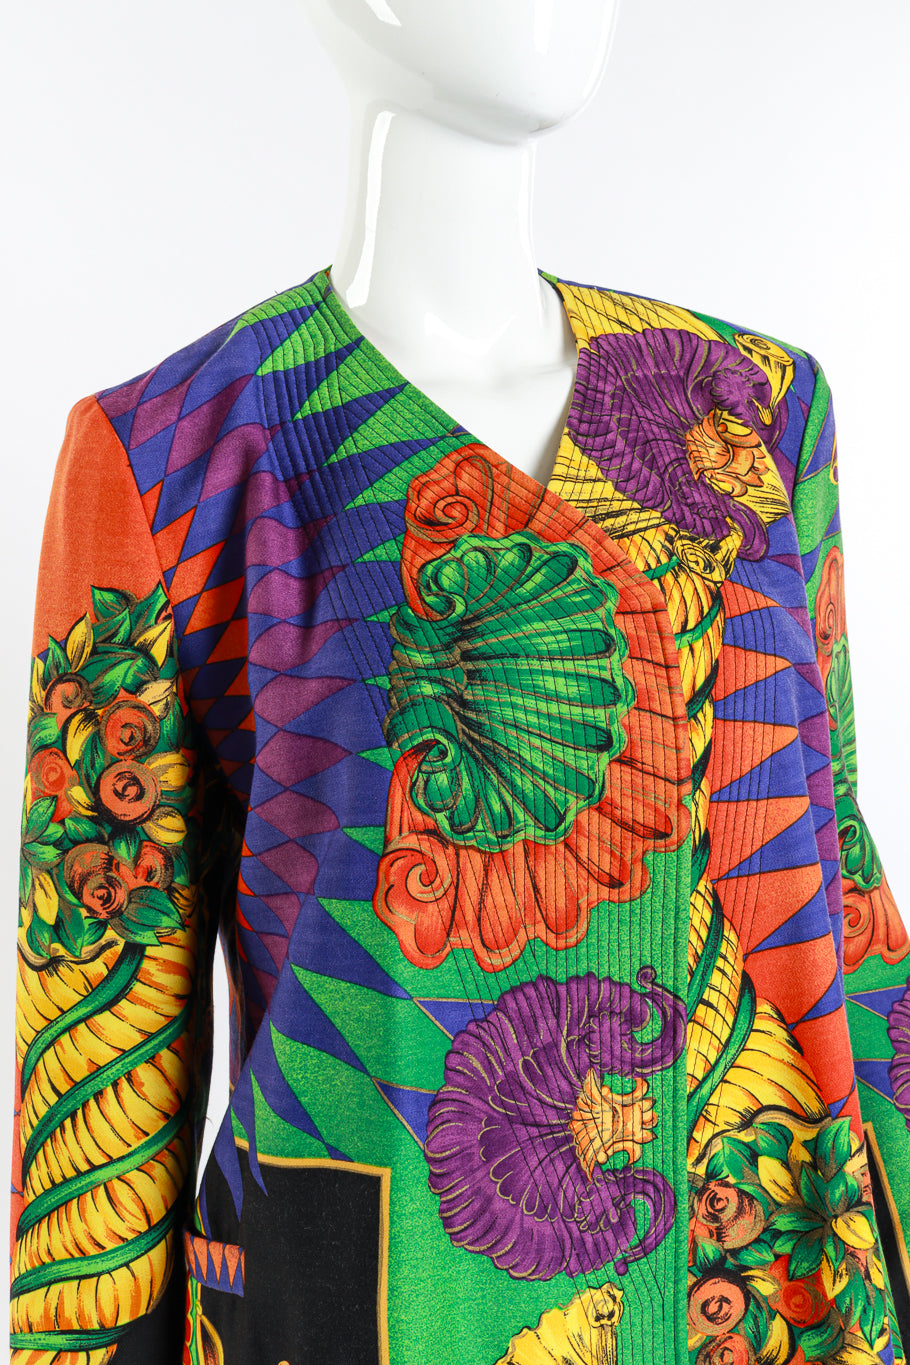 Versace 1991 Cornucopia of Prints Skirt Suit detail mannequin @RECESS LA